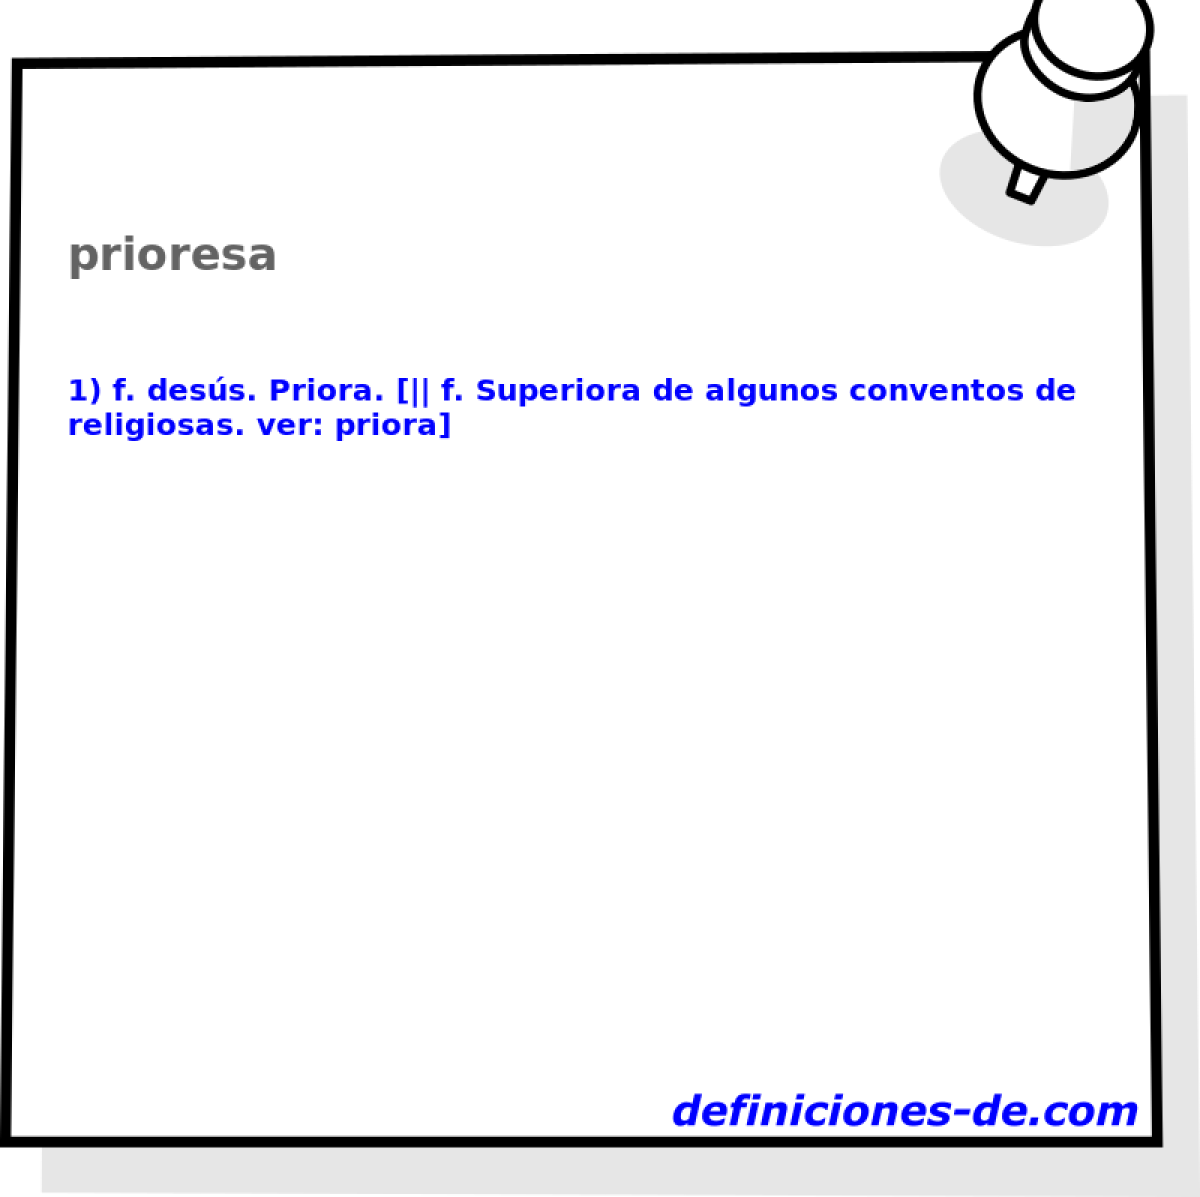 prioresa 